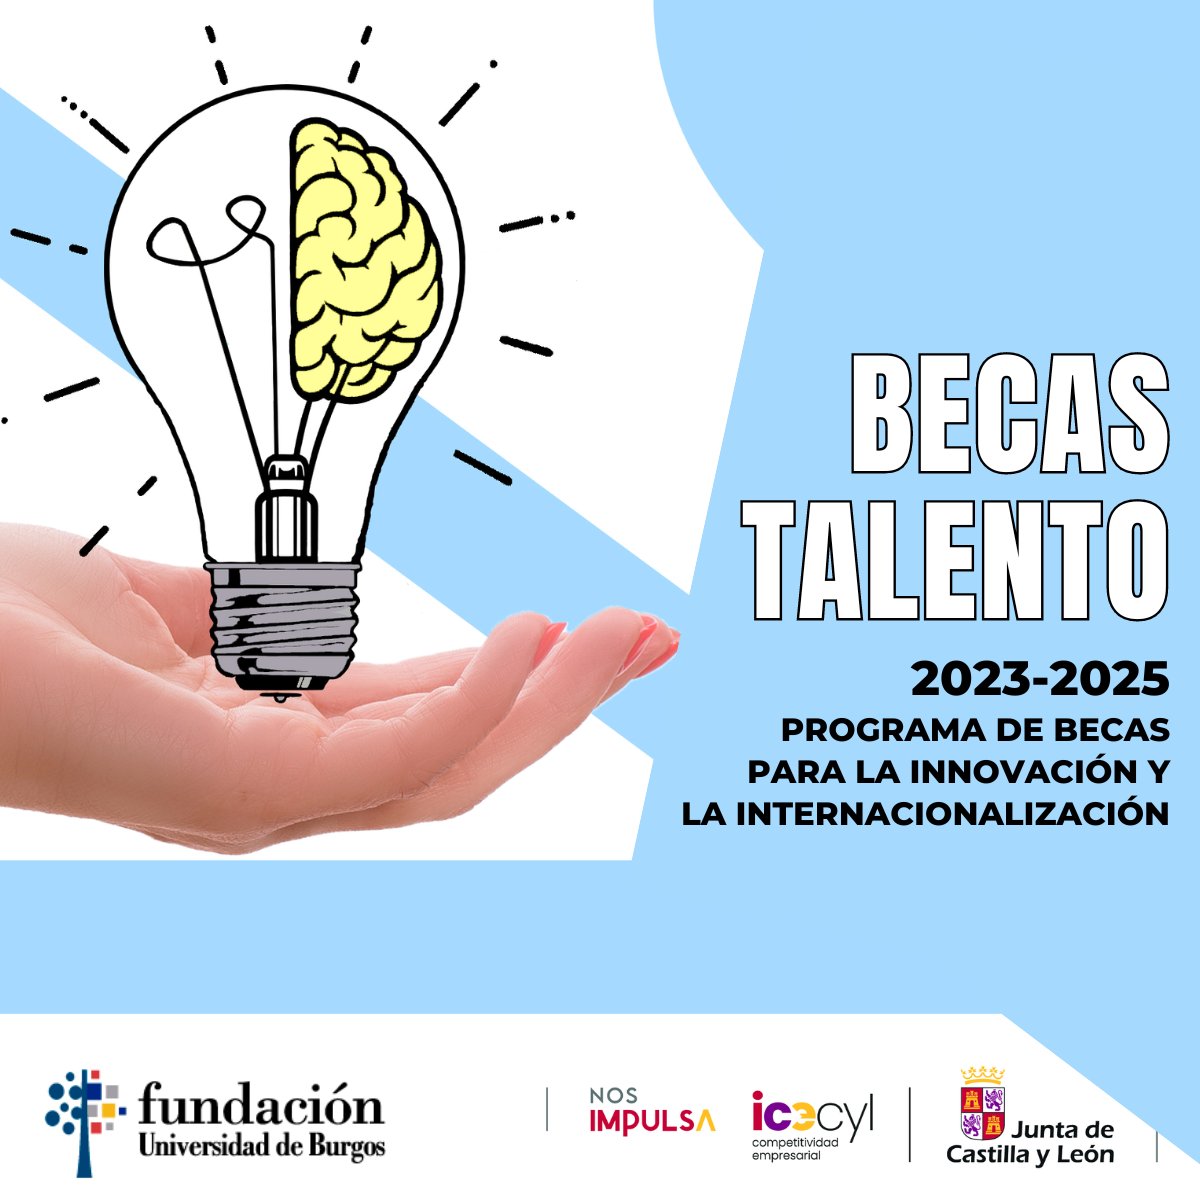 ¡¡Estás a tiempo!! Te presentamos las Becas Talento ICE 2023-2025; un programa promovido por la Junta de Castilla y León a través del ICECYL #ICECYL #Talento #BecasTalento ¡No dejes pasar esta oportunidad! ►Más info: fundacionubu.com/empleo/becas-t…